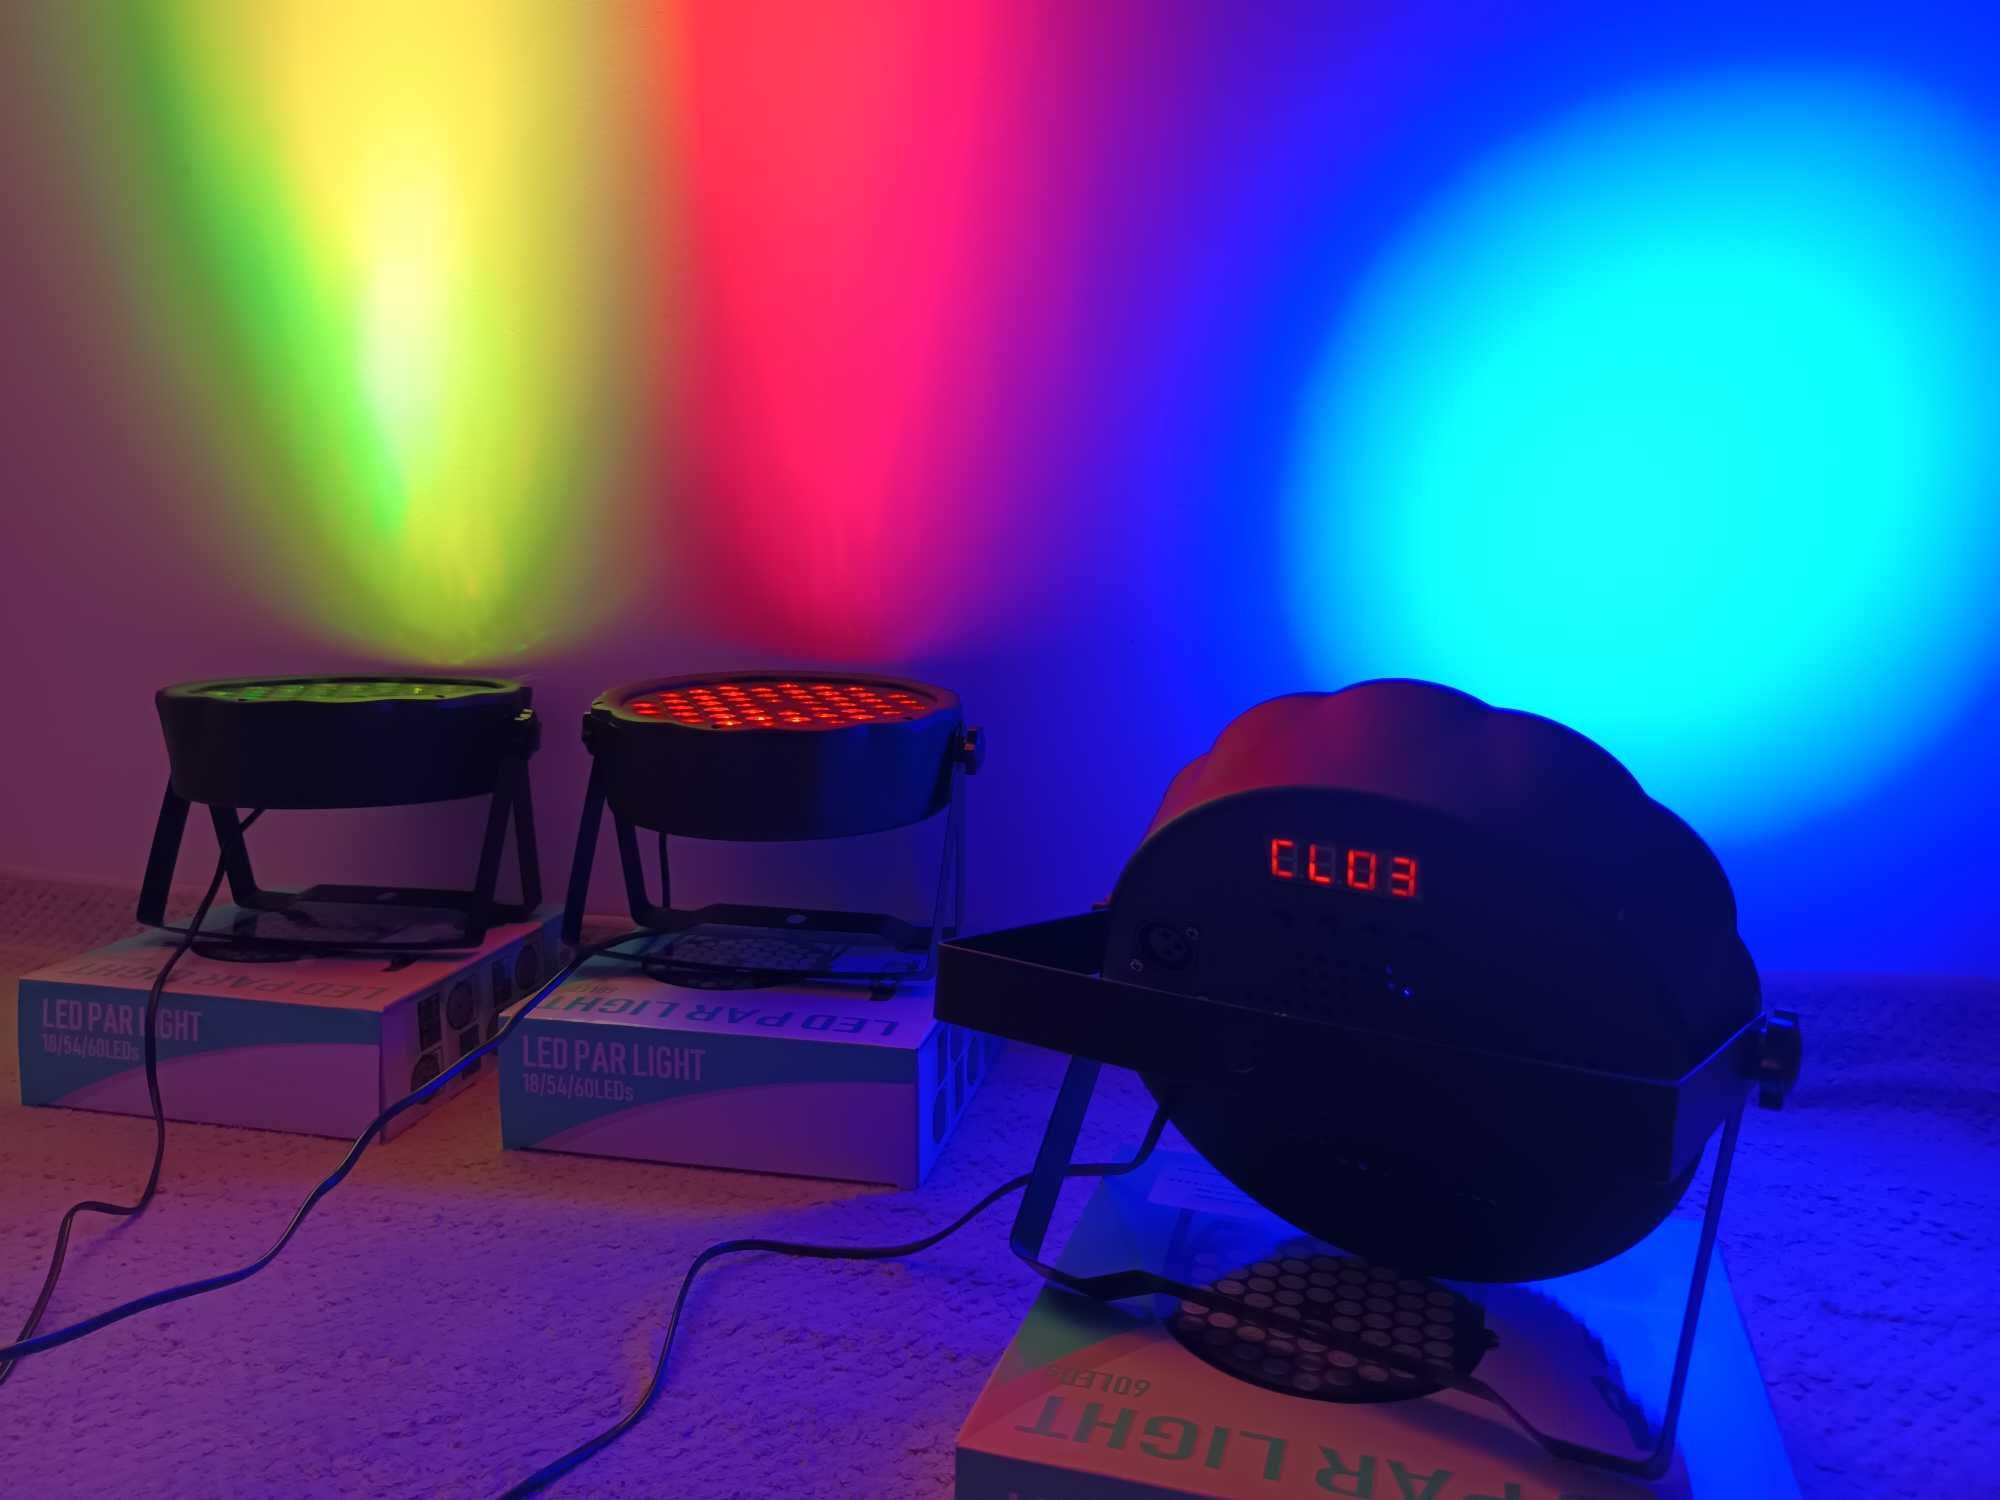 Proiector Disco 54 leduri Jocuri de culori automat, pe ritmul muzicii